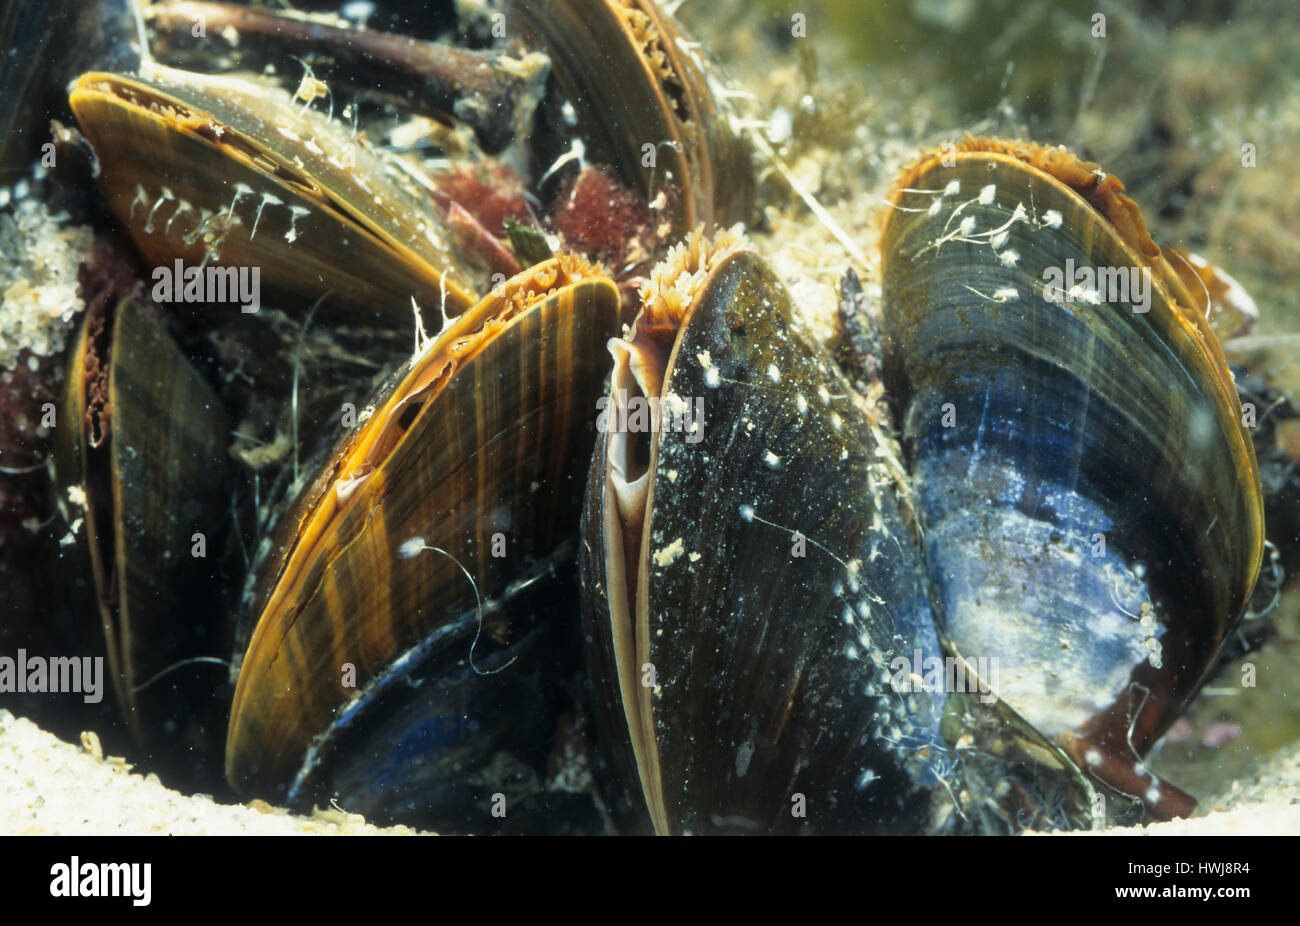 Gemeine Miesmuschel, Muschelbank, mit geöffneter Ein- und Ausströmöffnung unter Wasser, Mytilus edulis, bay mussel, common mussel, common blue mussel Stock Photo